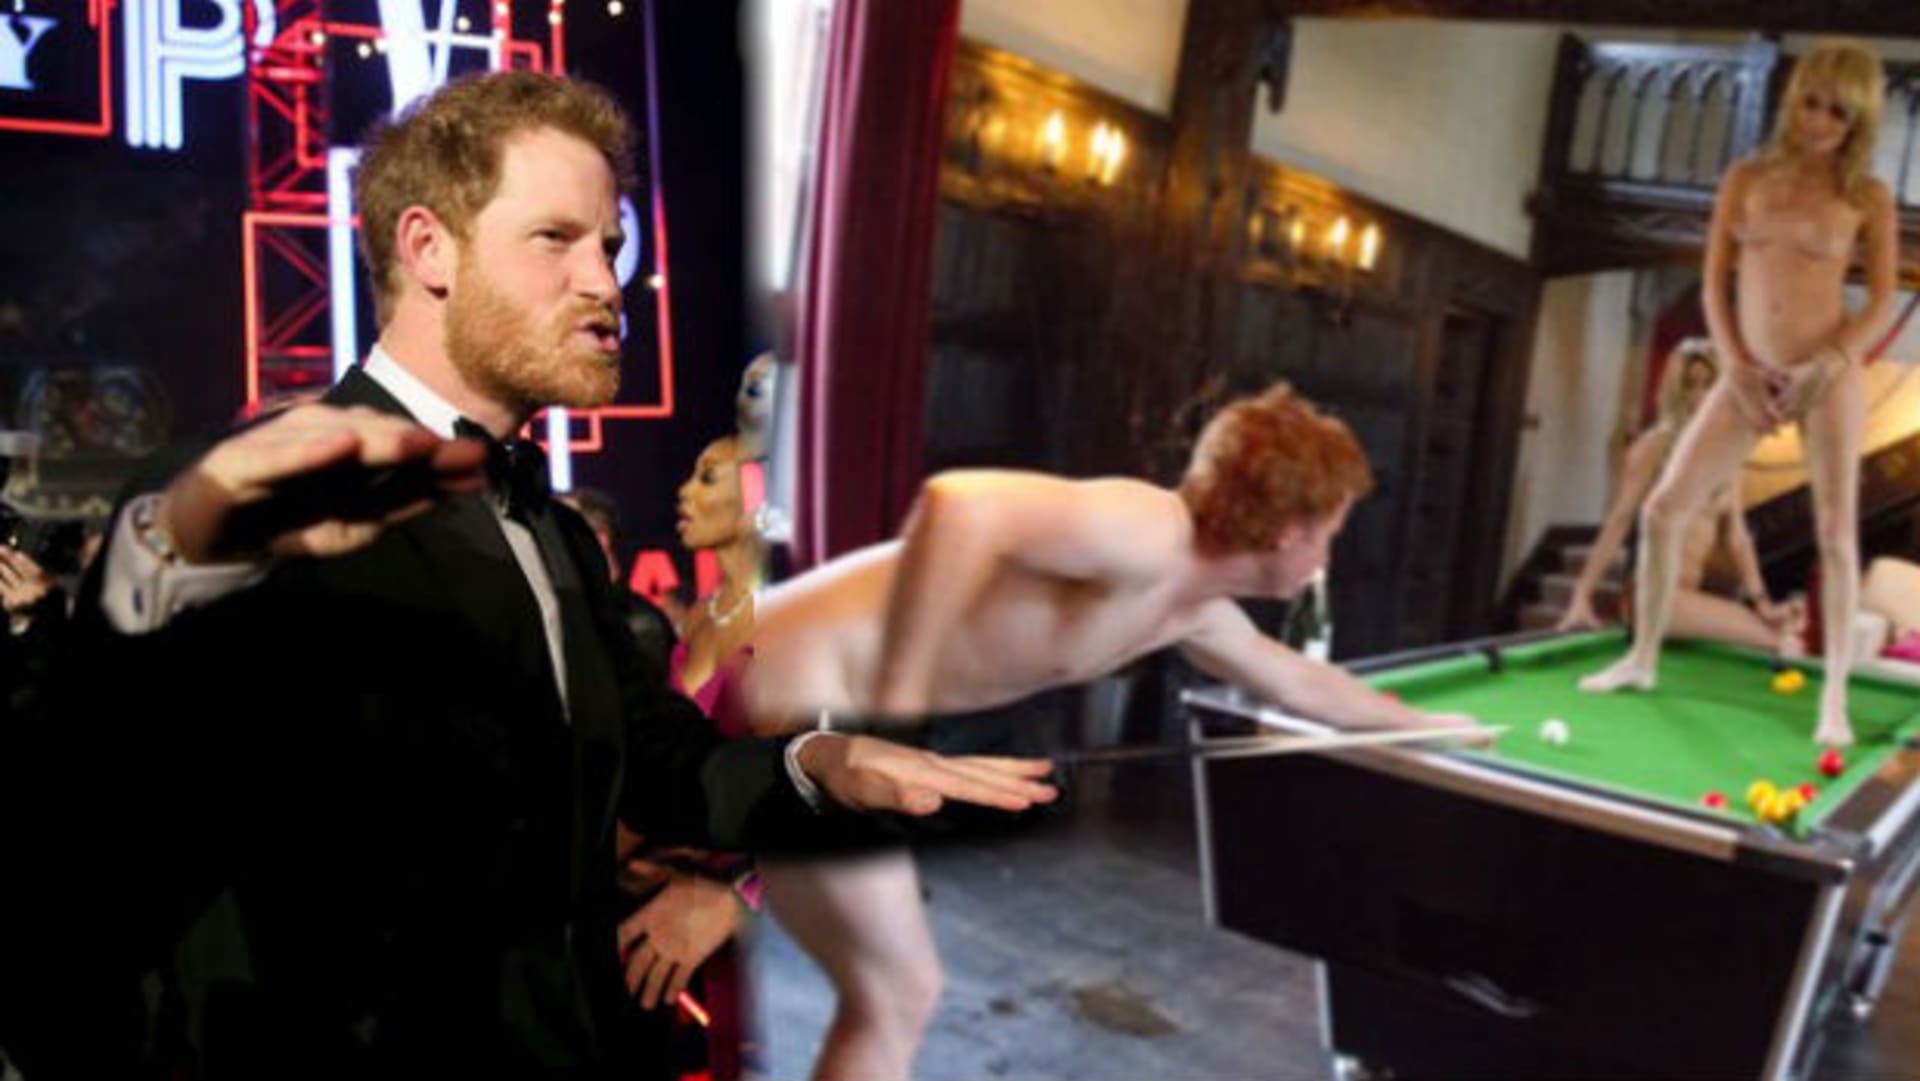 Princ Harry si s nahými modelkami hraje moc rád.